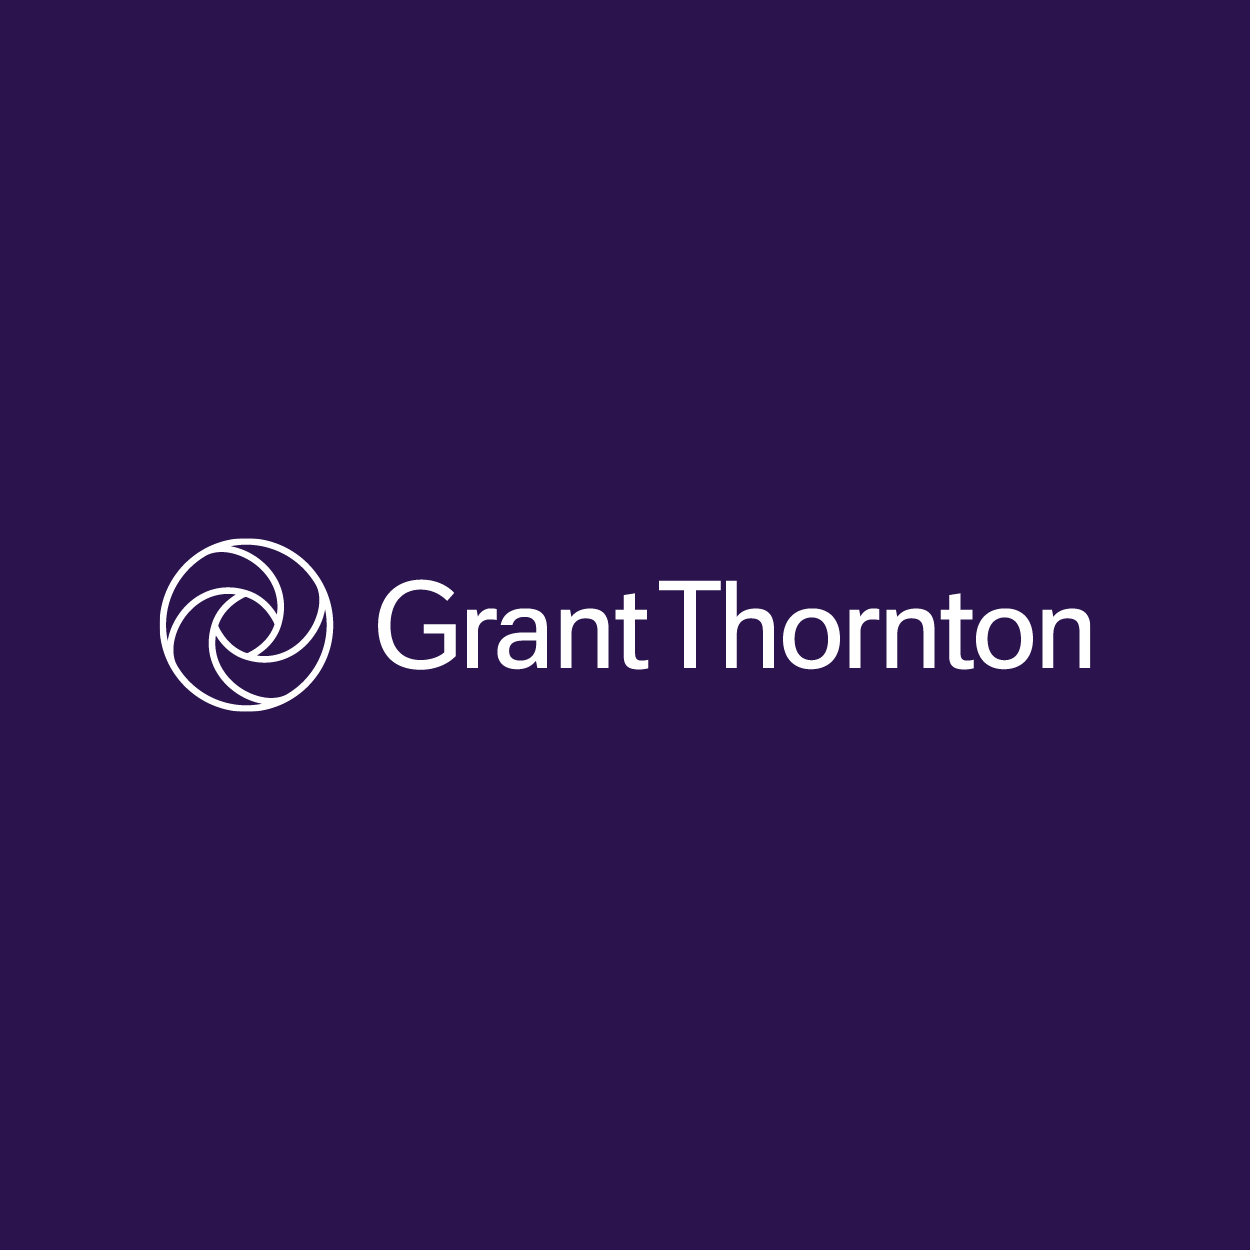 www.grantthornton.ie